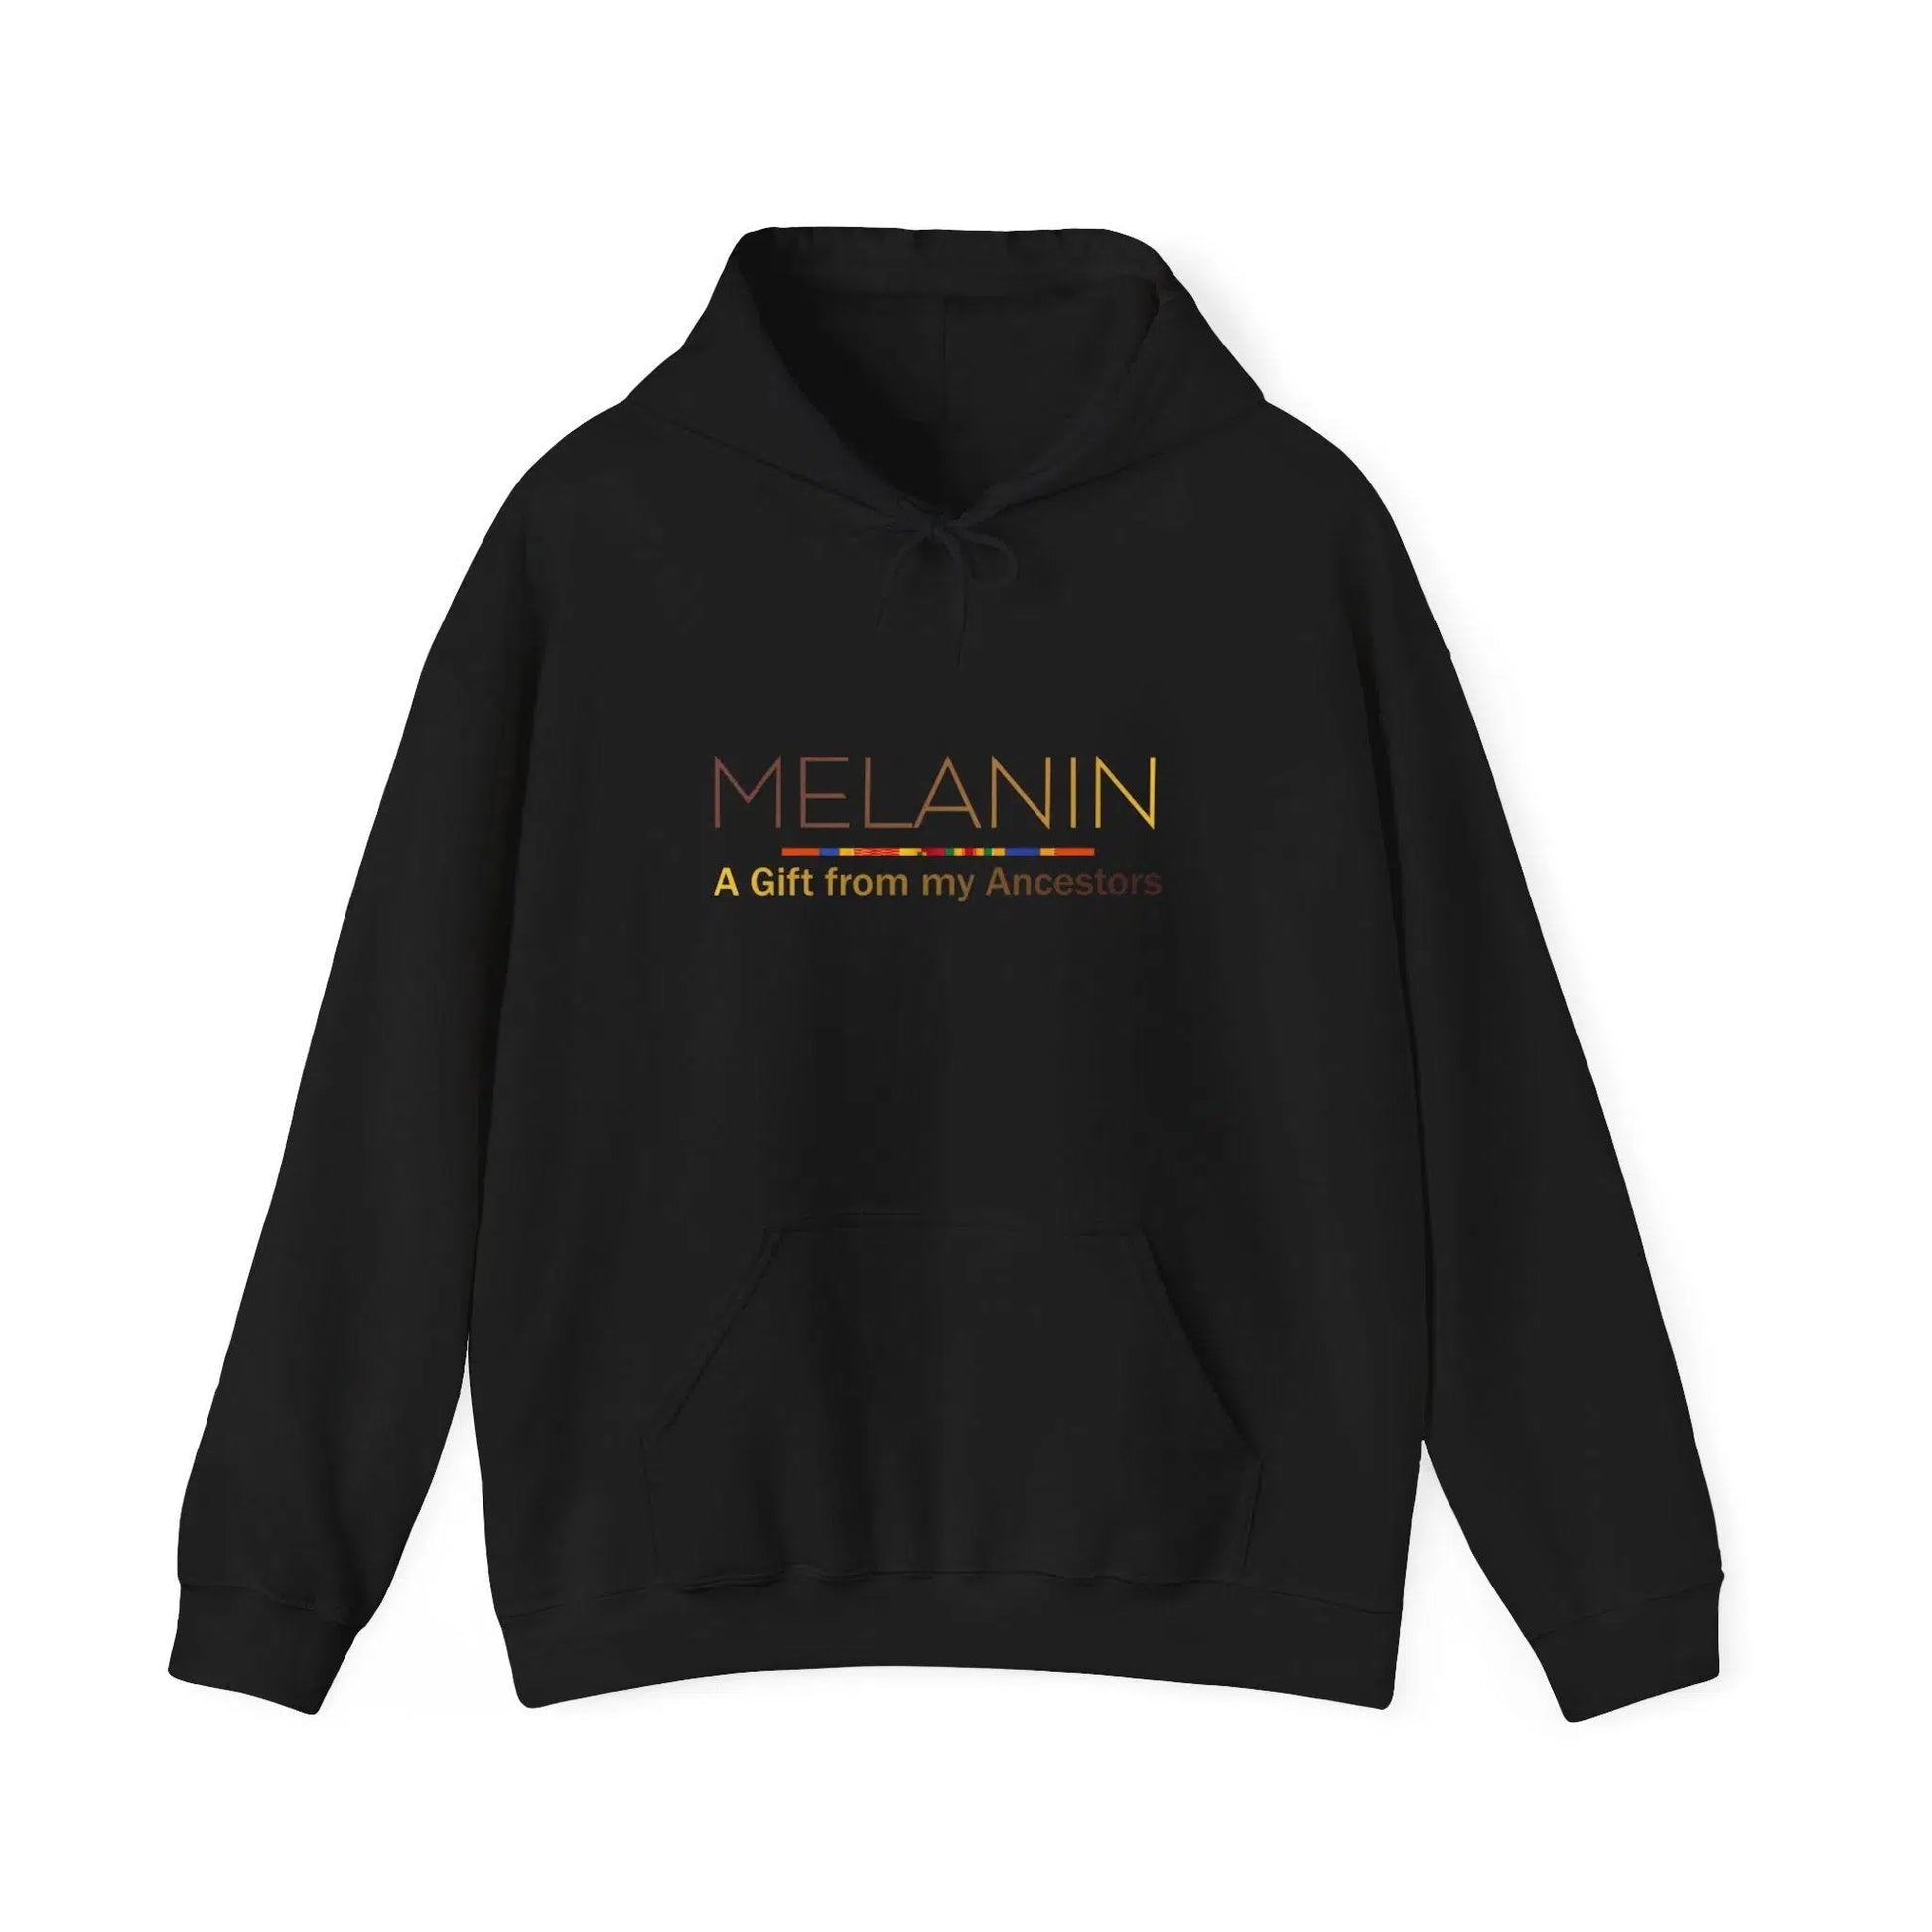 Melanin hoodie Black is beautiful shirt